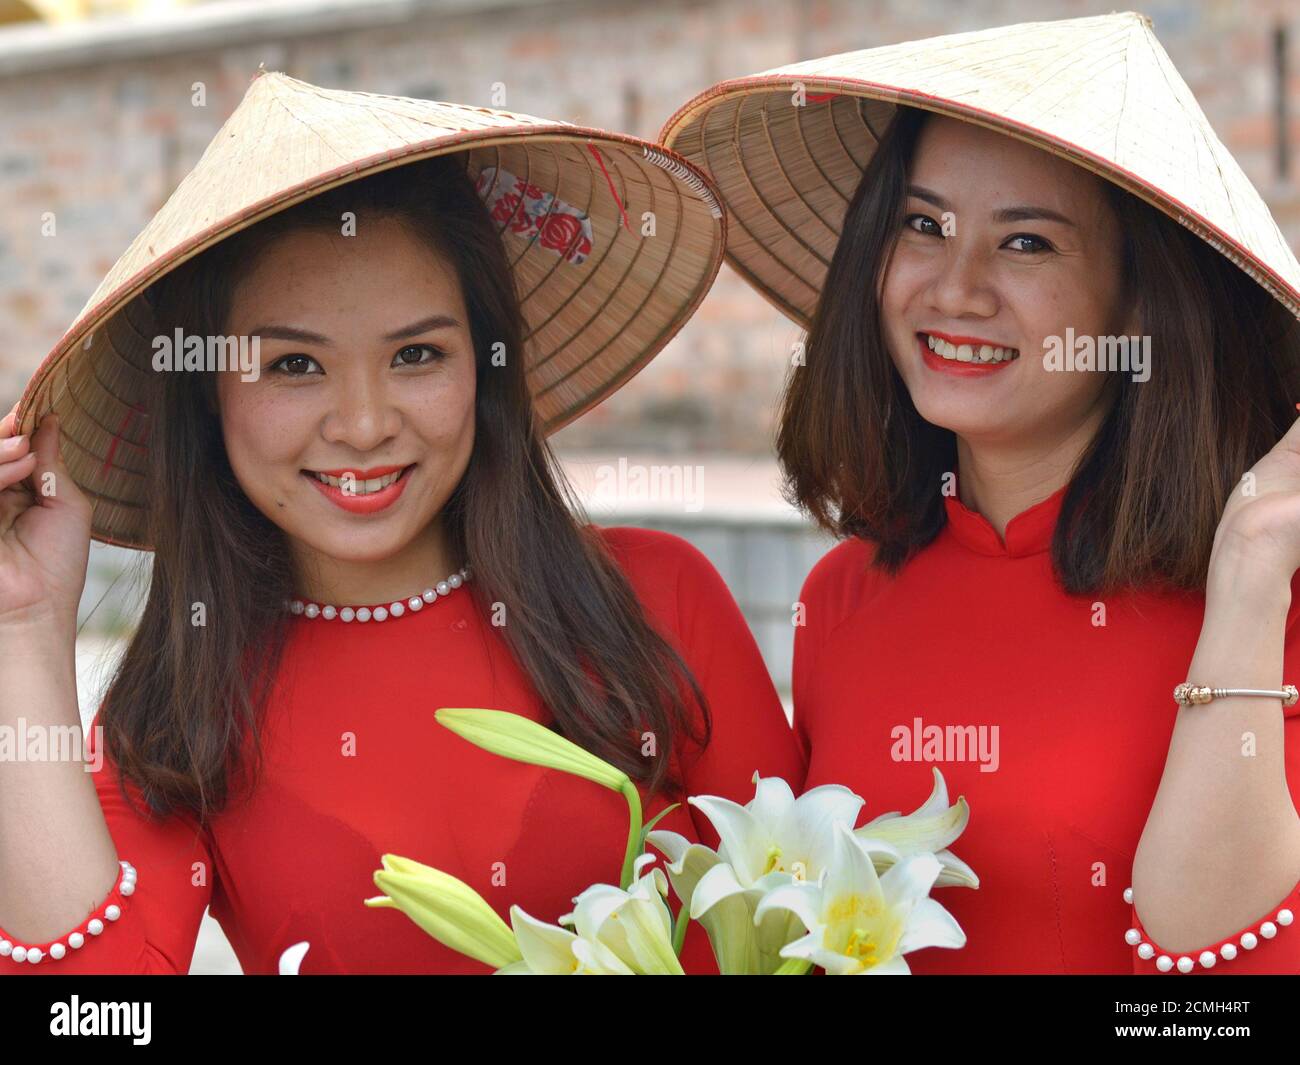 Deux jeunes femmes vietnamiennes portent des chapeaux coniques asiatiques  et des robes vietnamiennes rouges, tiennent son bord de leurs chapeaux avec  leurs mains, et souriez pour l'appareil photo Photo Stock - Alamy